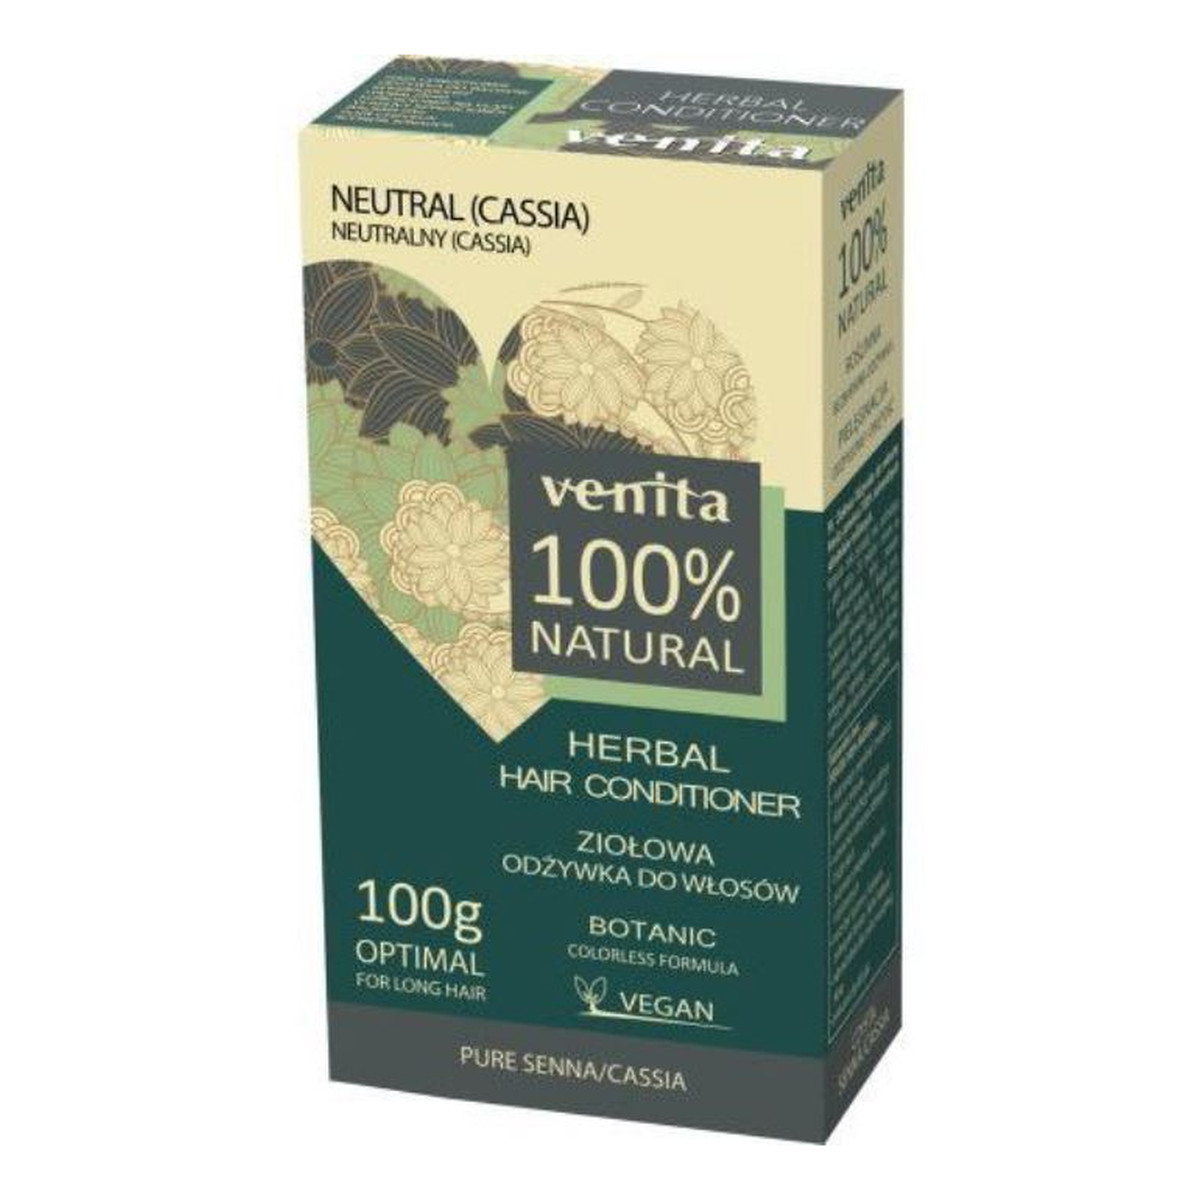 Venita Herbal hair conditioner ziołowa odżywka do włosów 2x50g 100g